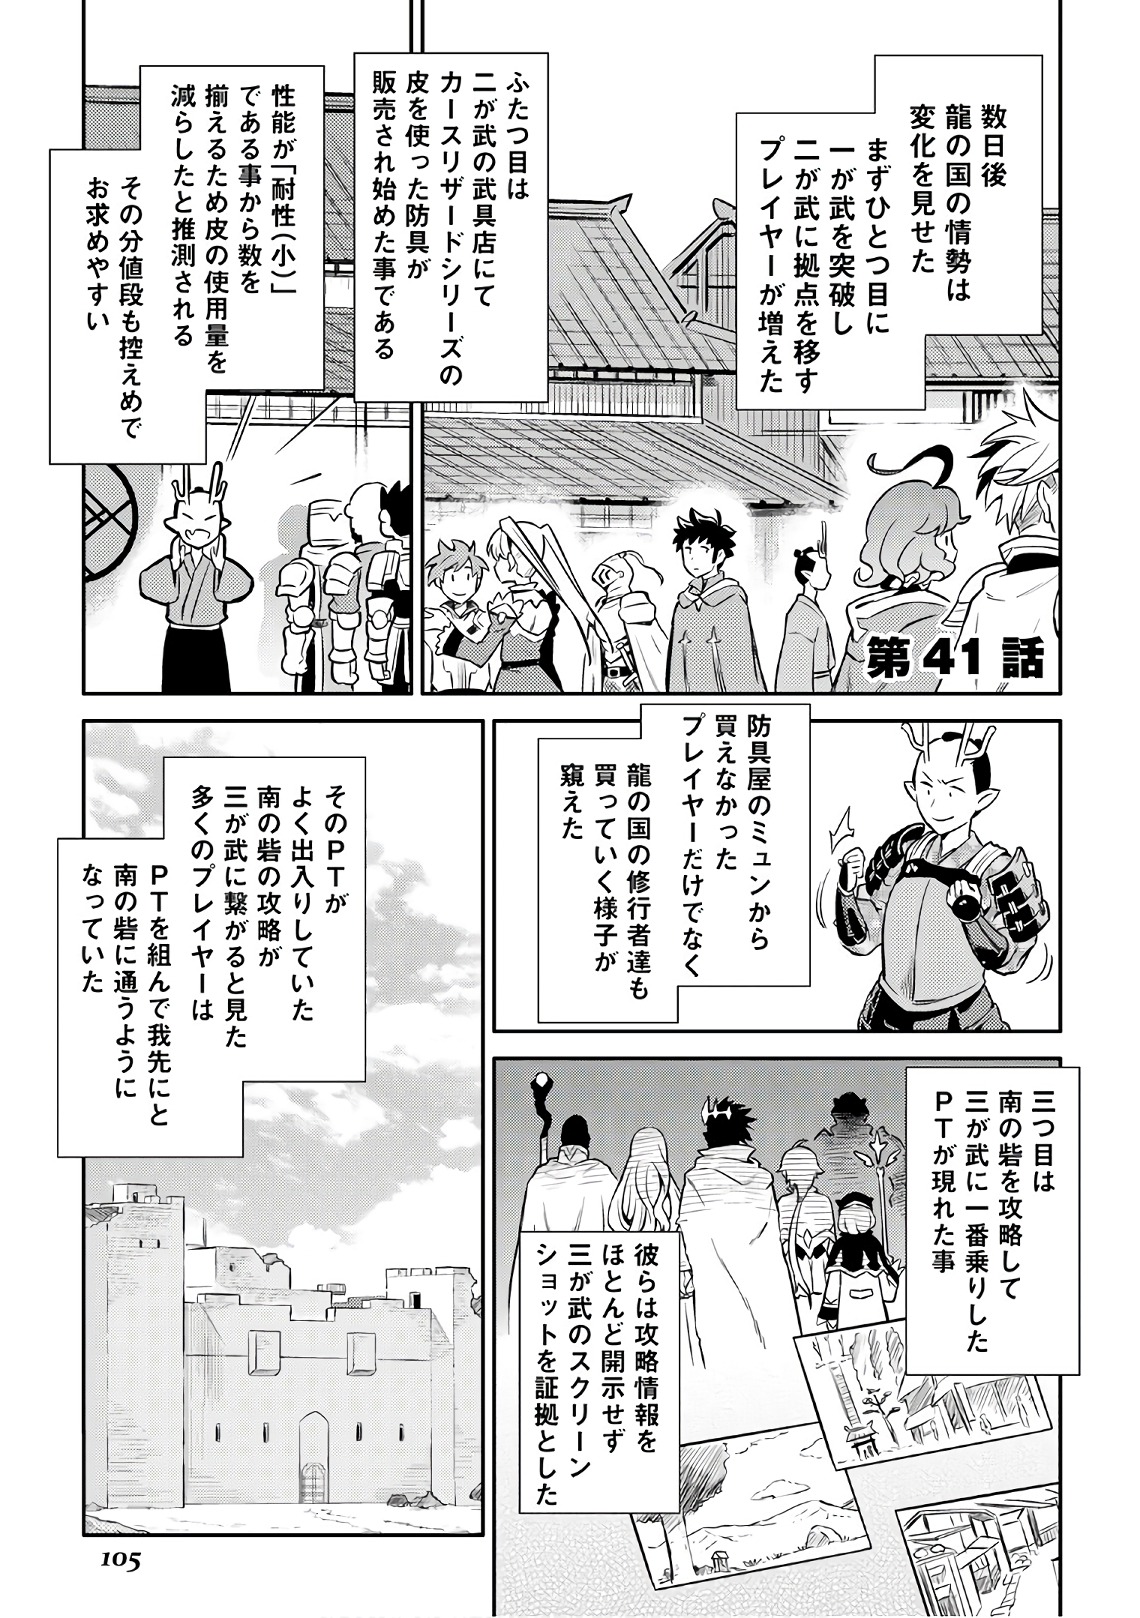 Toaru Ossan no VRMMO Katsudouki - Chapter 41 - Page 1